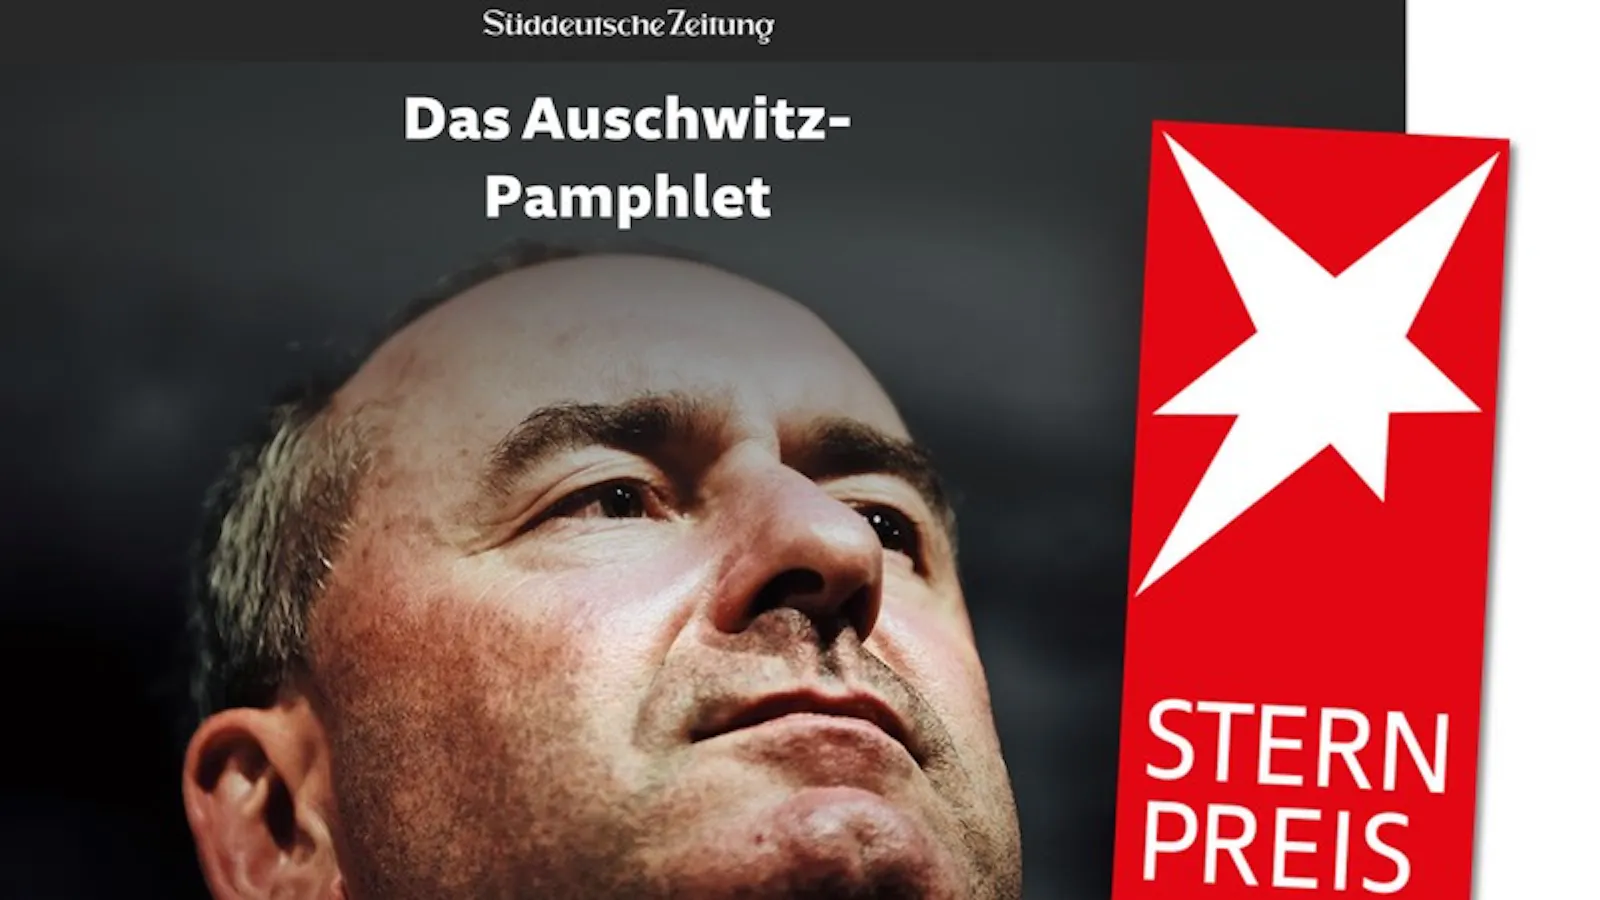 SZ-Geschichte über Aiwanger gewinnt "Stern"-Preis.